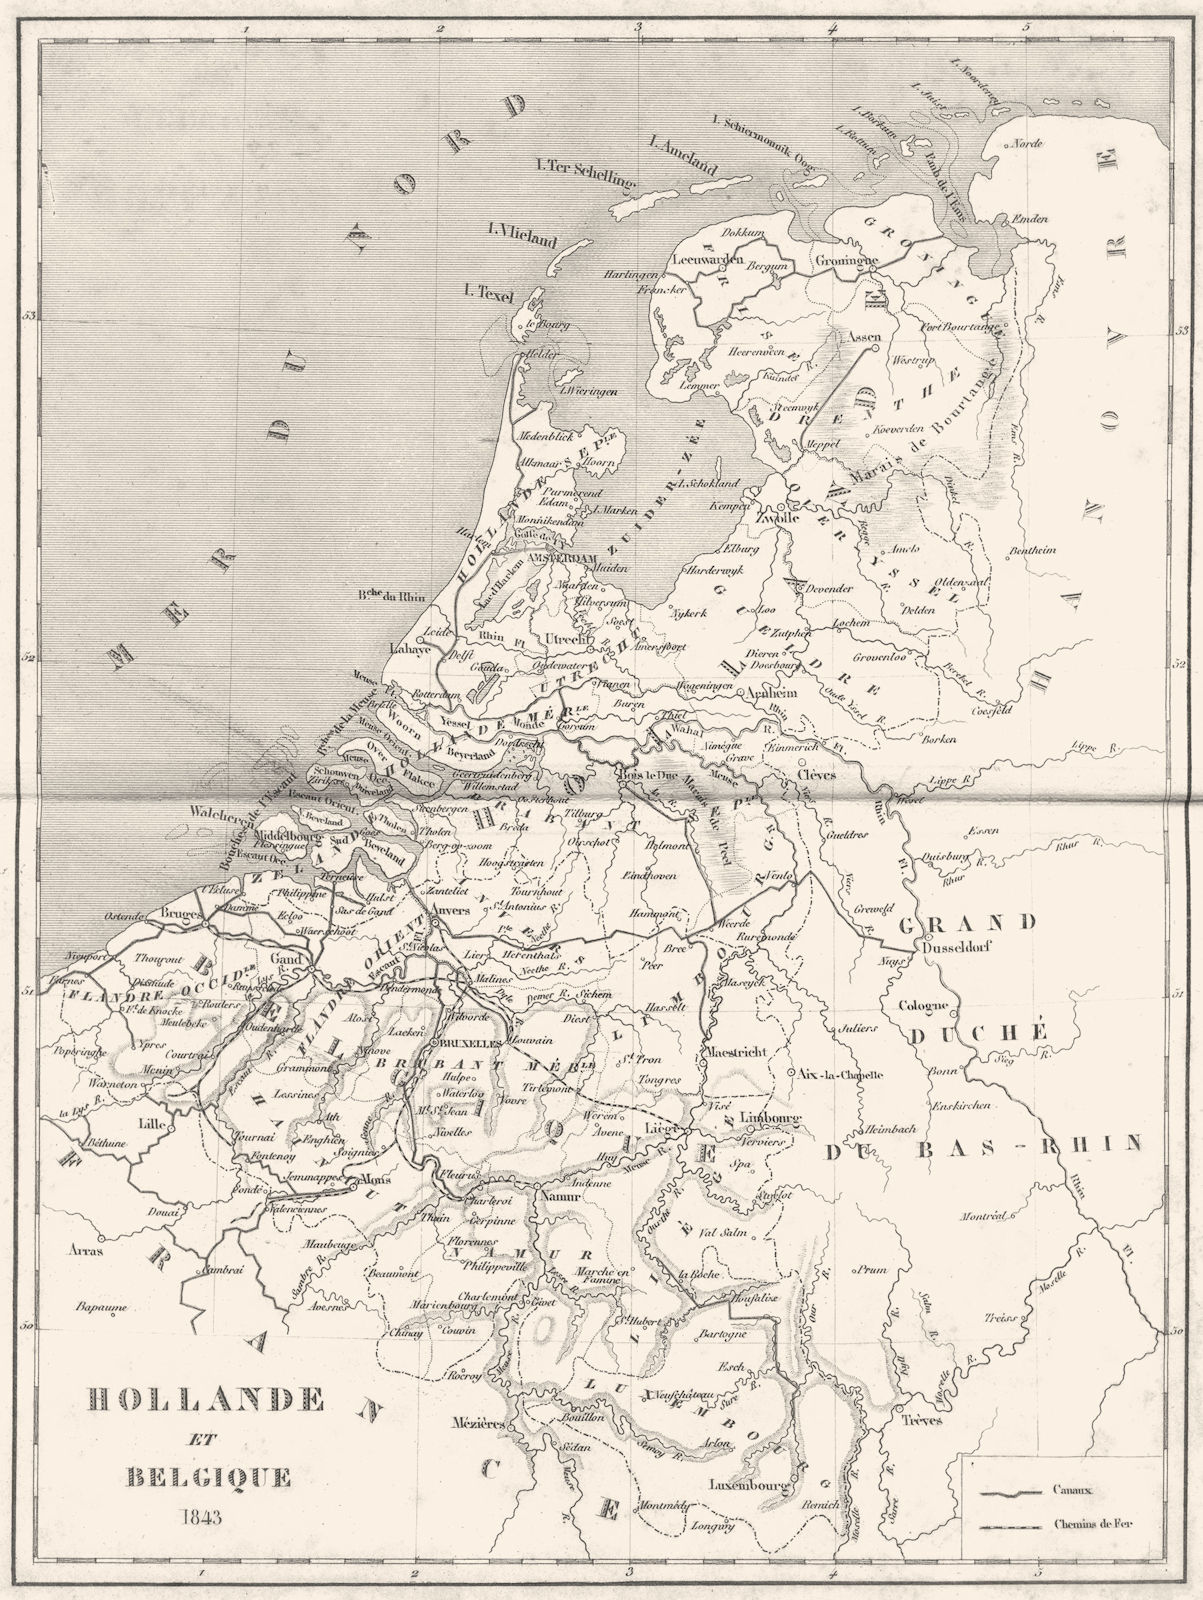 NETHERLANDS. Holland et Belgique 1843 1879 old antique vintage map plan chart